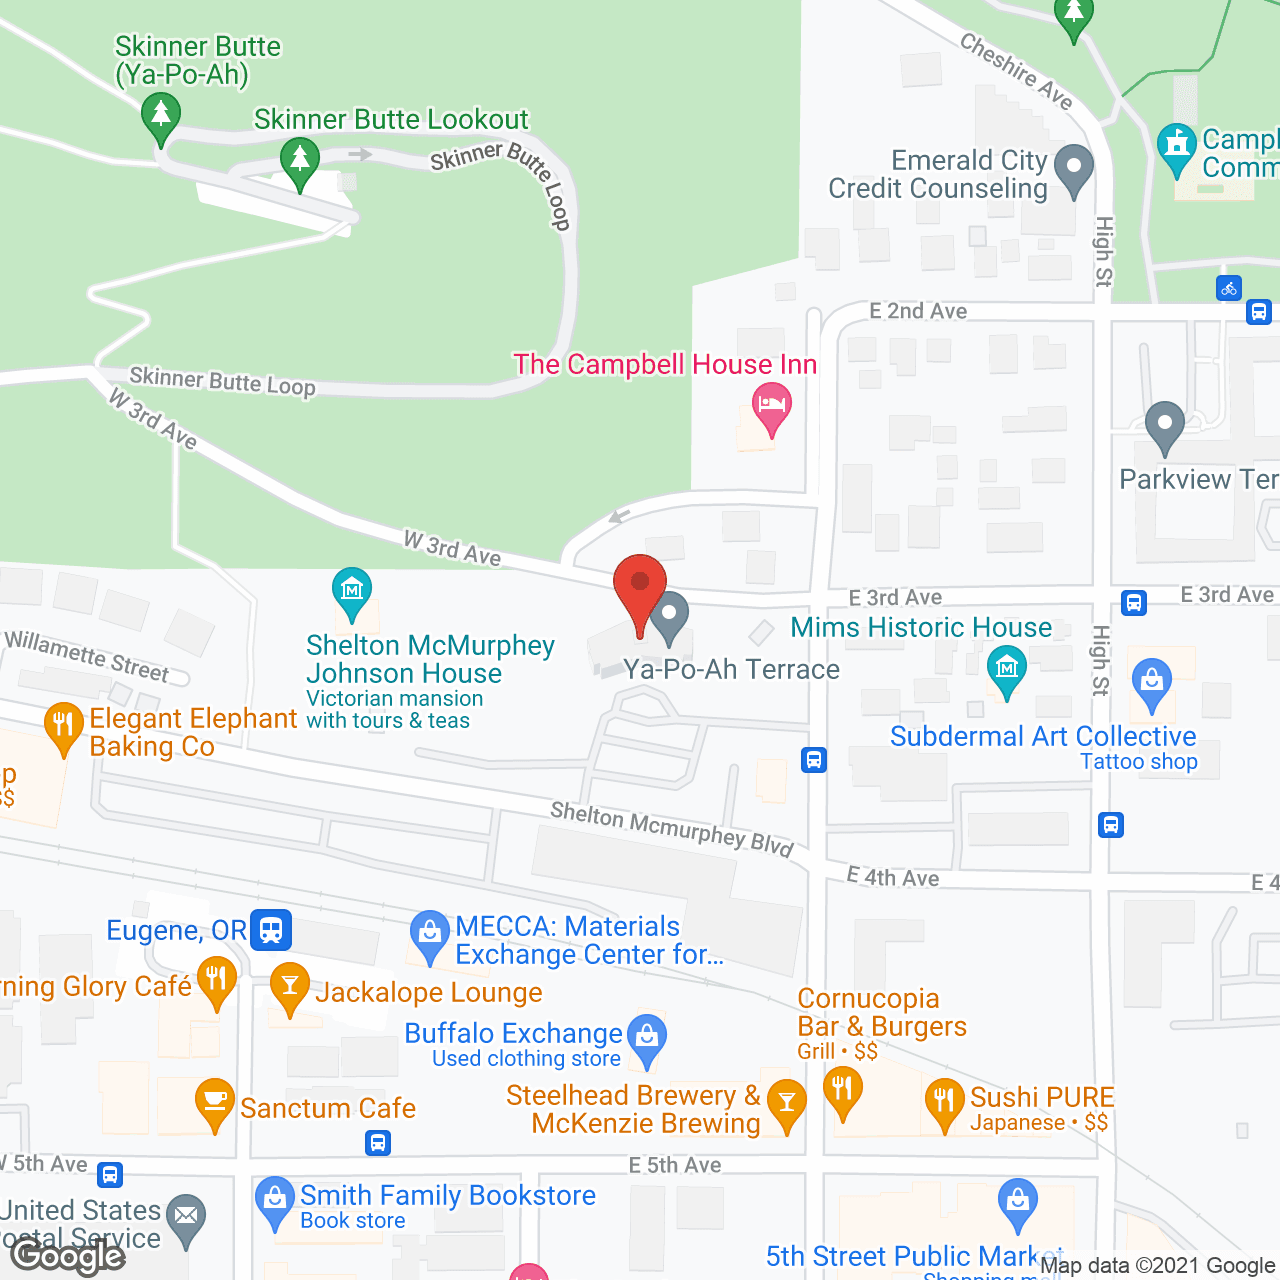 Ya-Po-Ah Terrace in google map